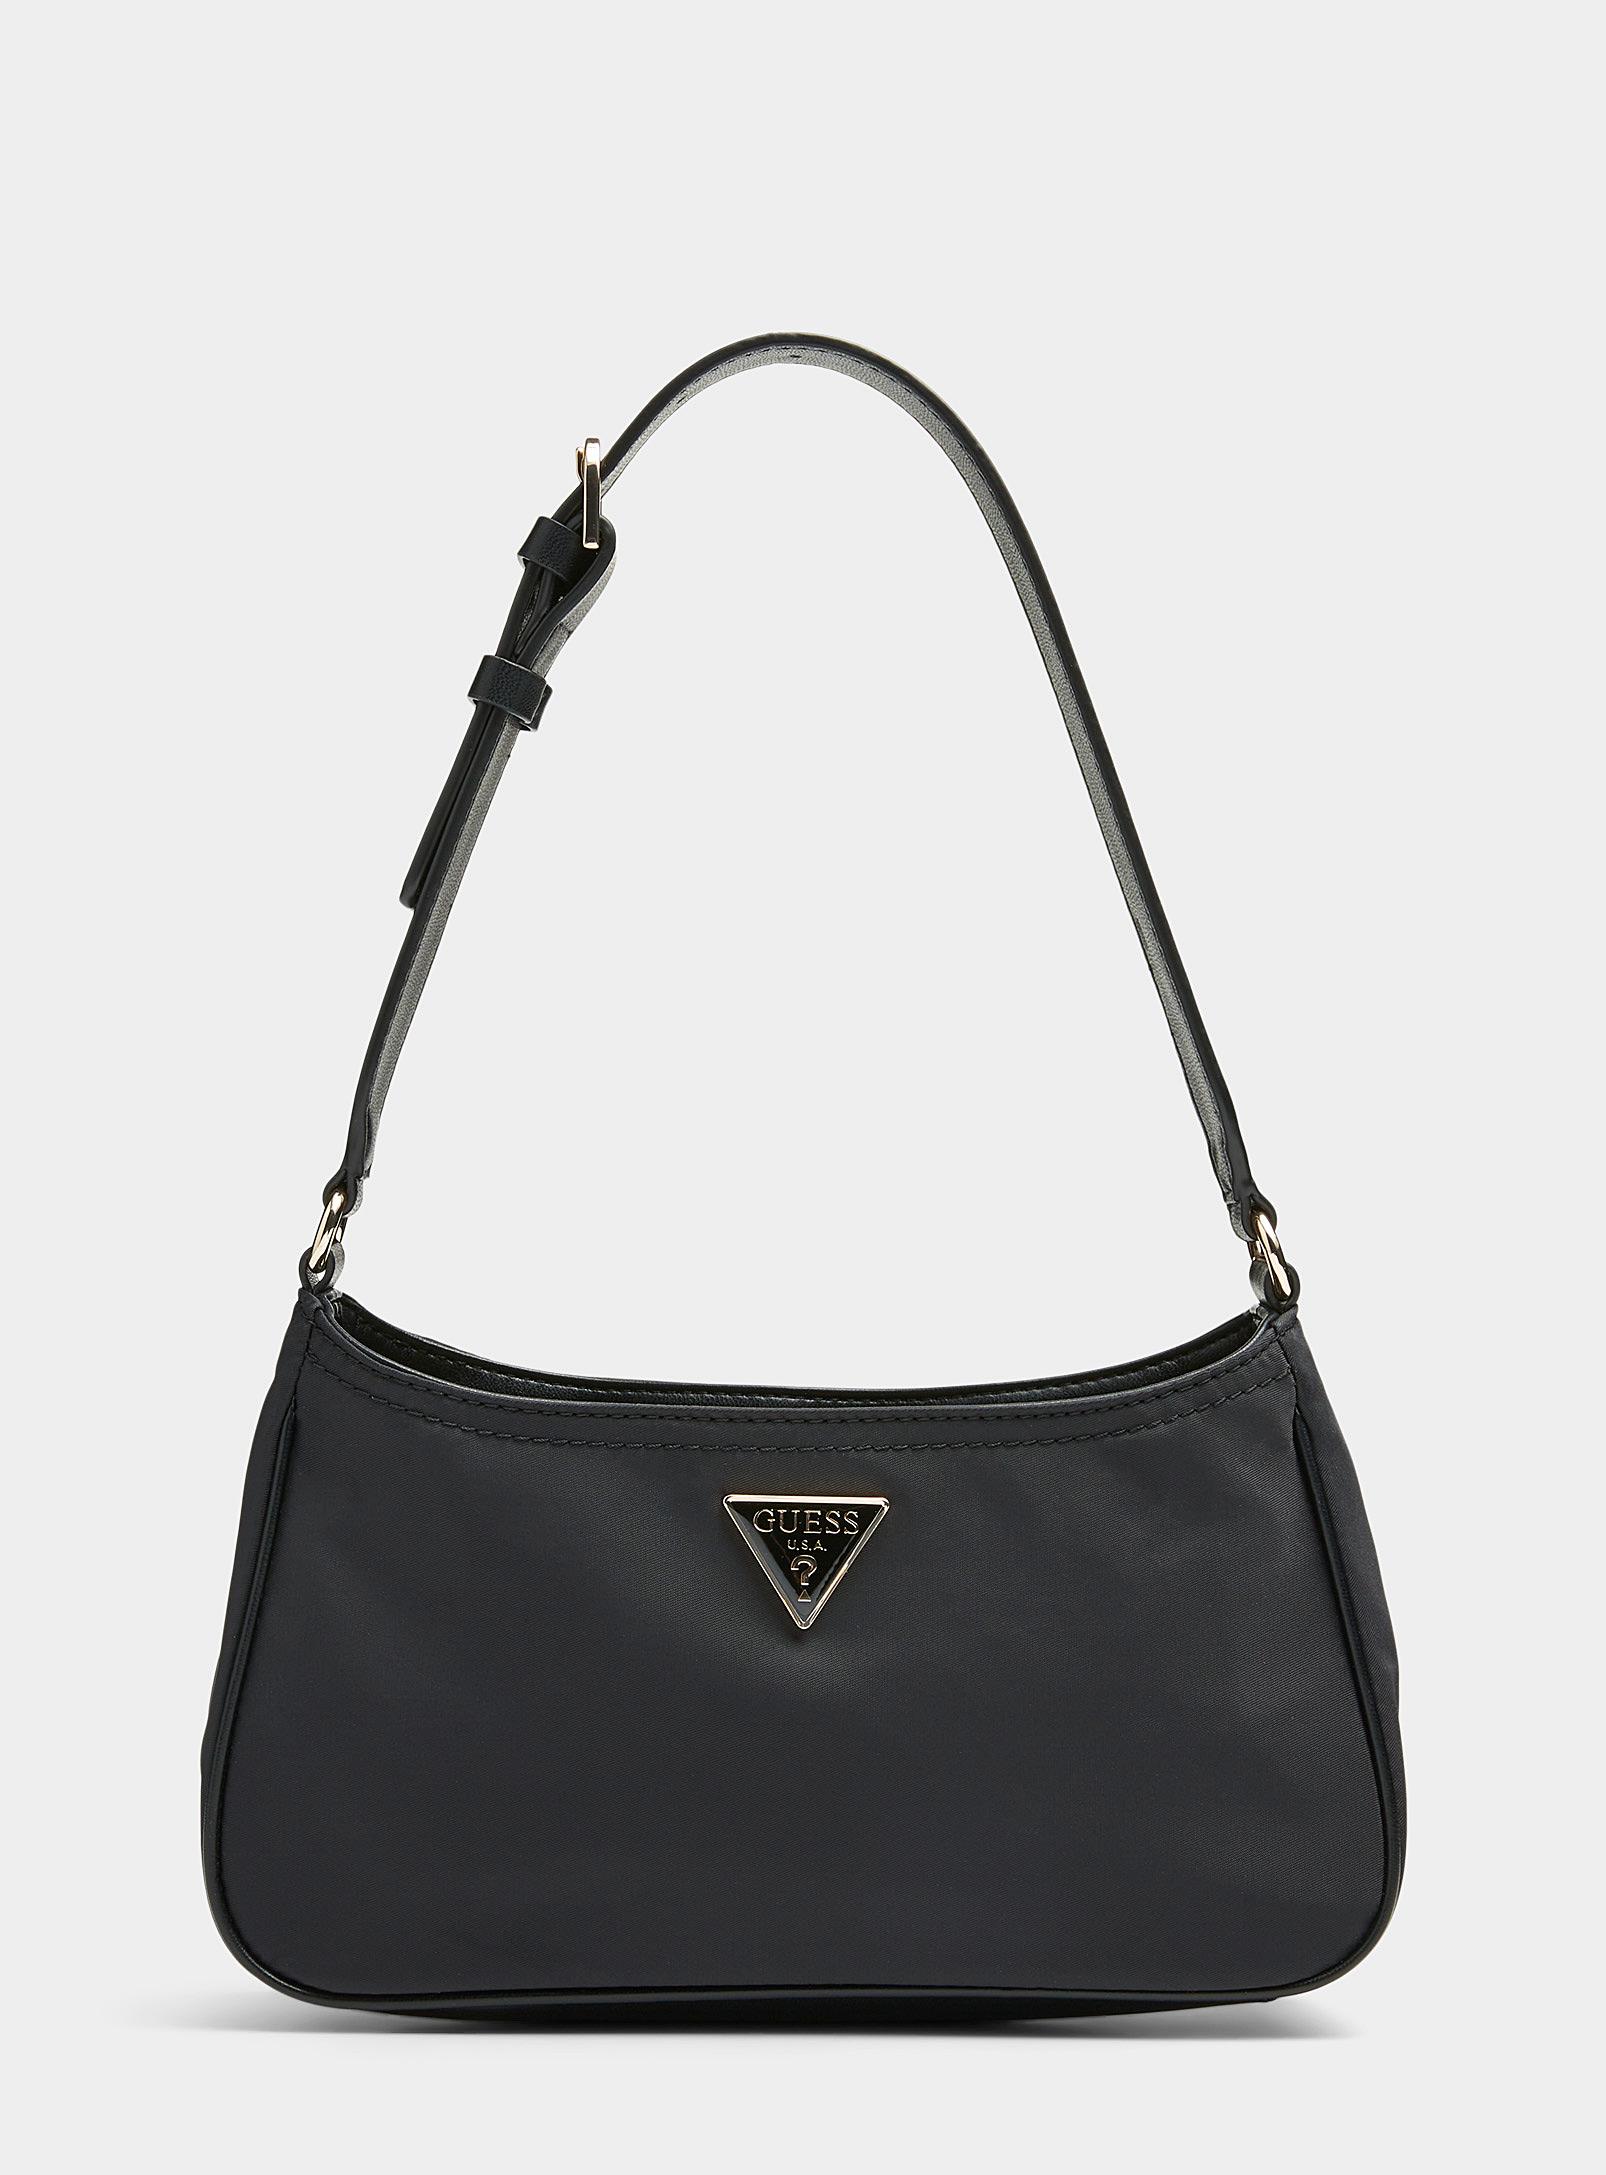 GUESS Meridian Flap Shoulder Bag, Black: Handbags: Amazon.com